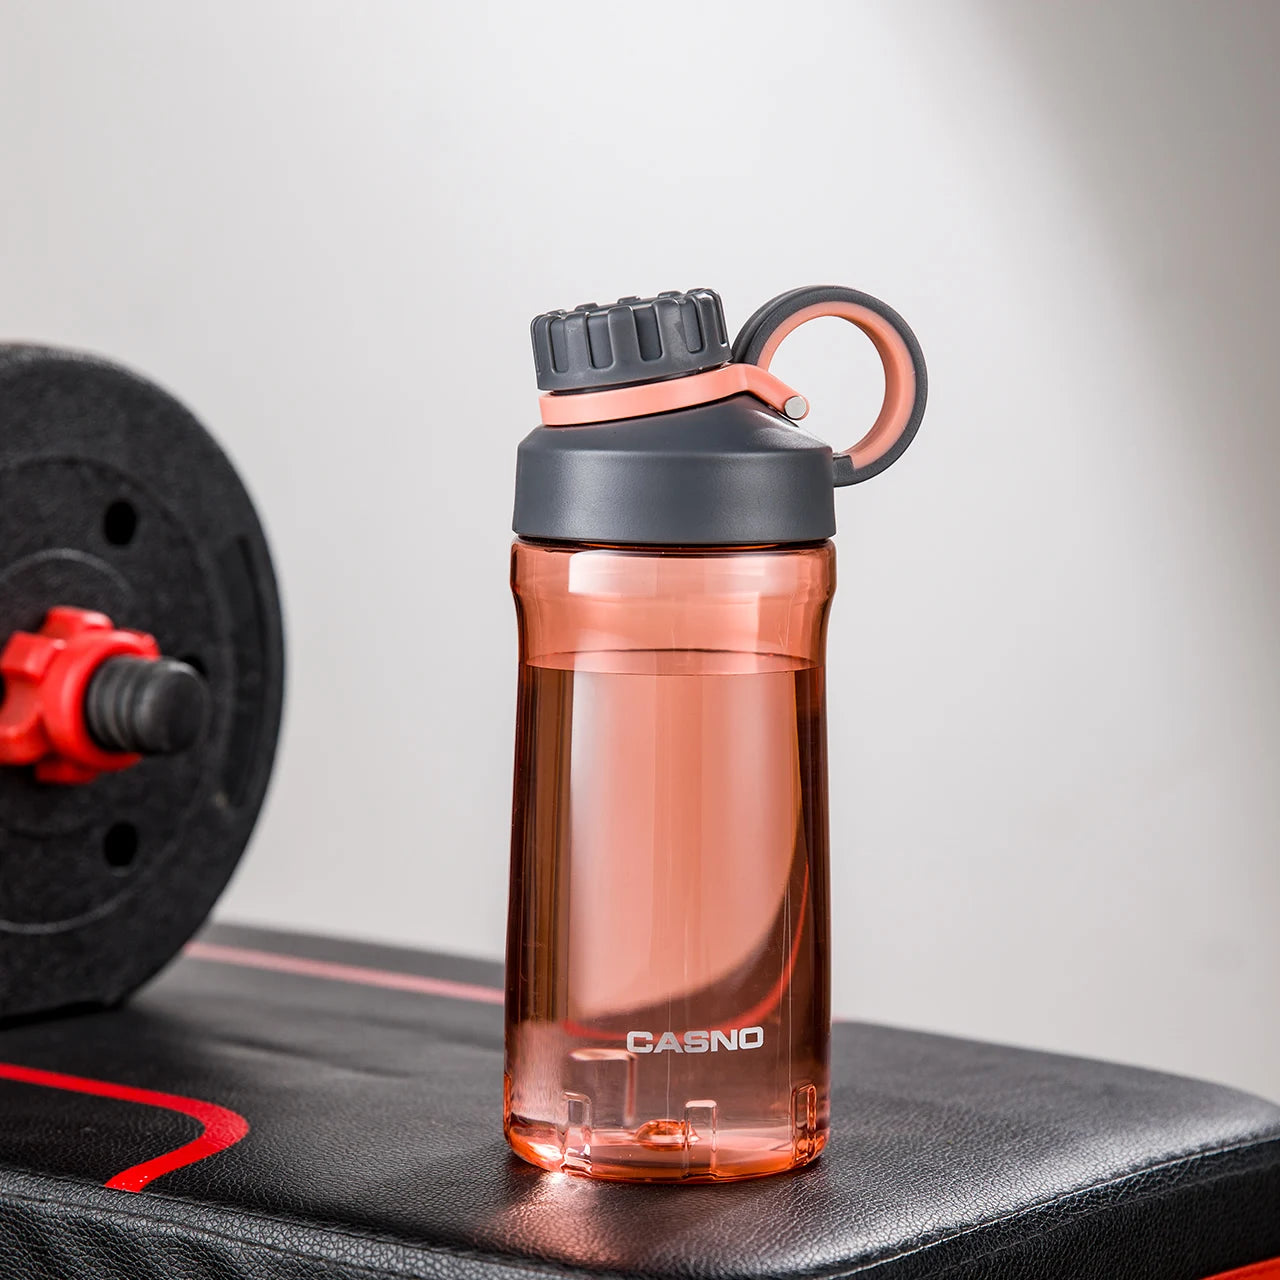 Eine rote, transparente Sporttrinkflasche auf einer Fitnessbank. Die Flasche hat einen schwarzen Schraubverschluss mit einem Henkel und ist mit dem Wort "SPORT" sowie der Marke "CASNO" beschriftet. Im Hintergrund ist eine Hantel mit roten Details zu sehen.